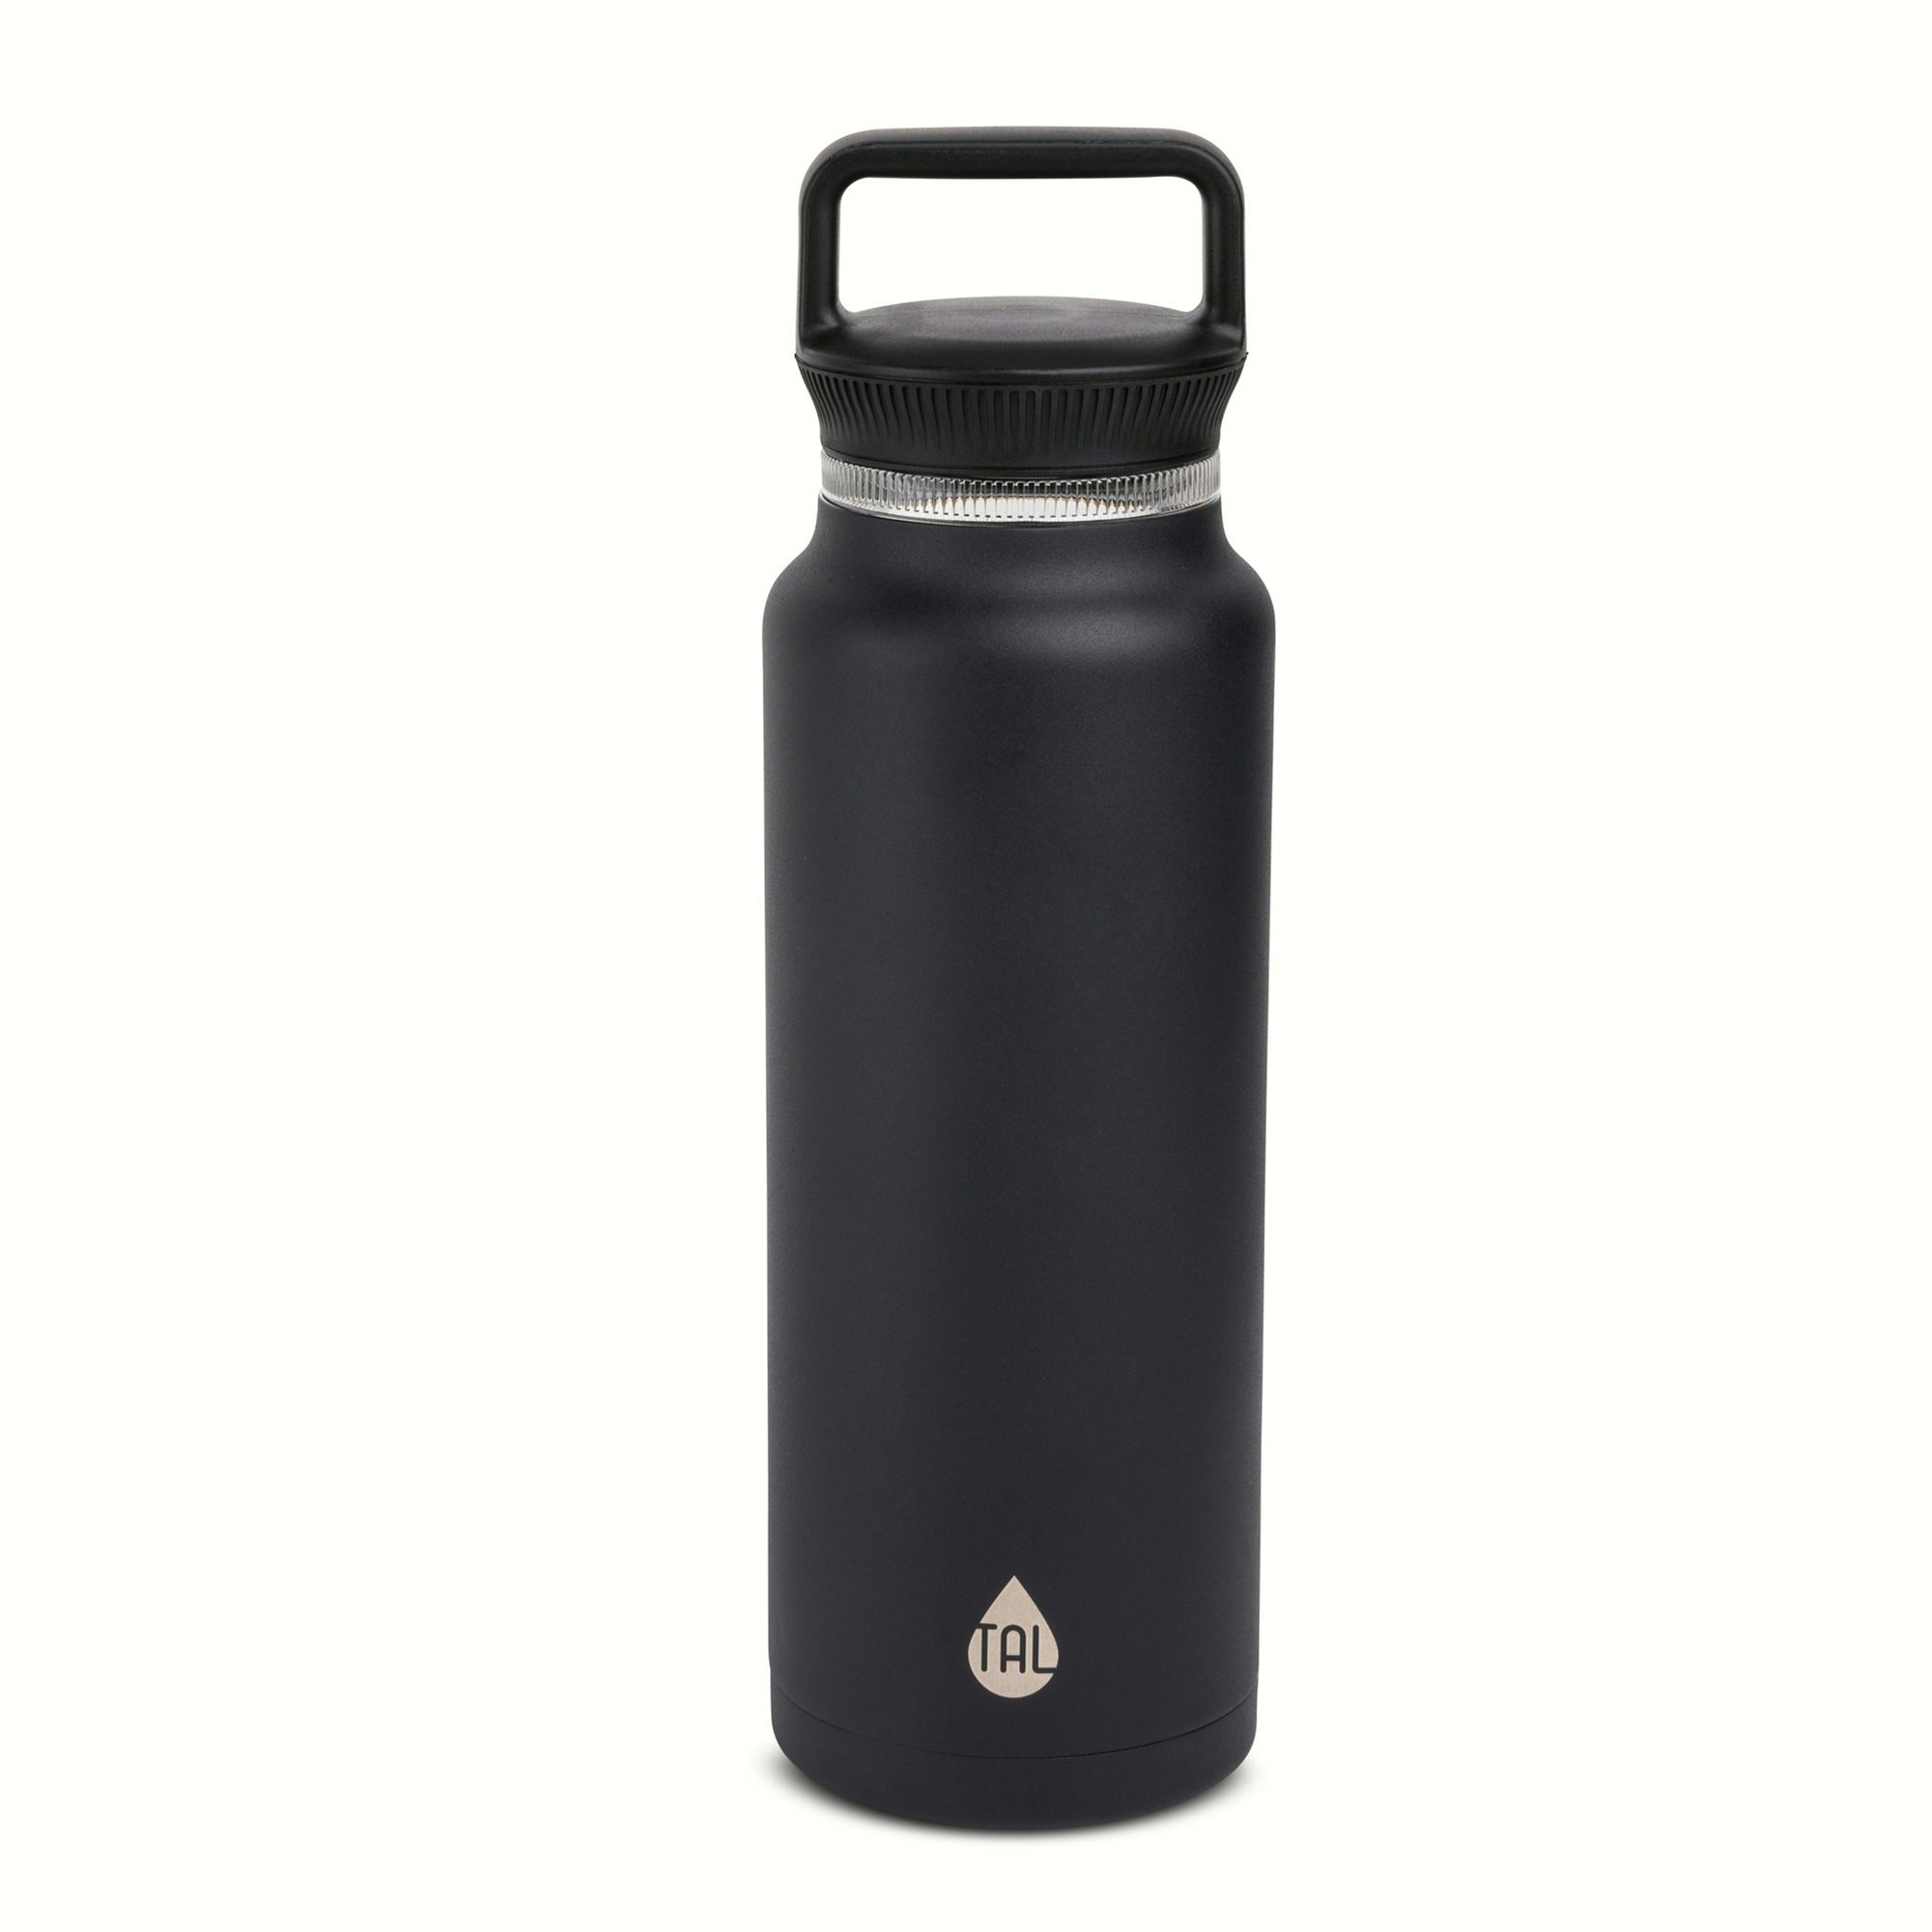 TAL Stainless Steel Everett Water Bottle 50 fl oz, Black | Walmart (US)